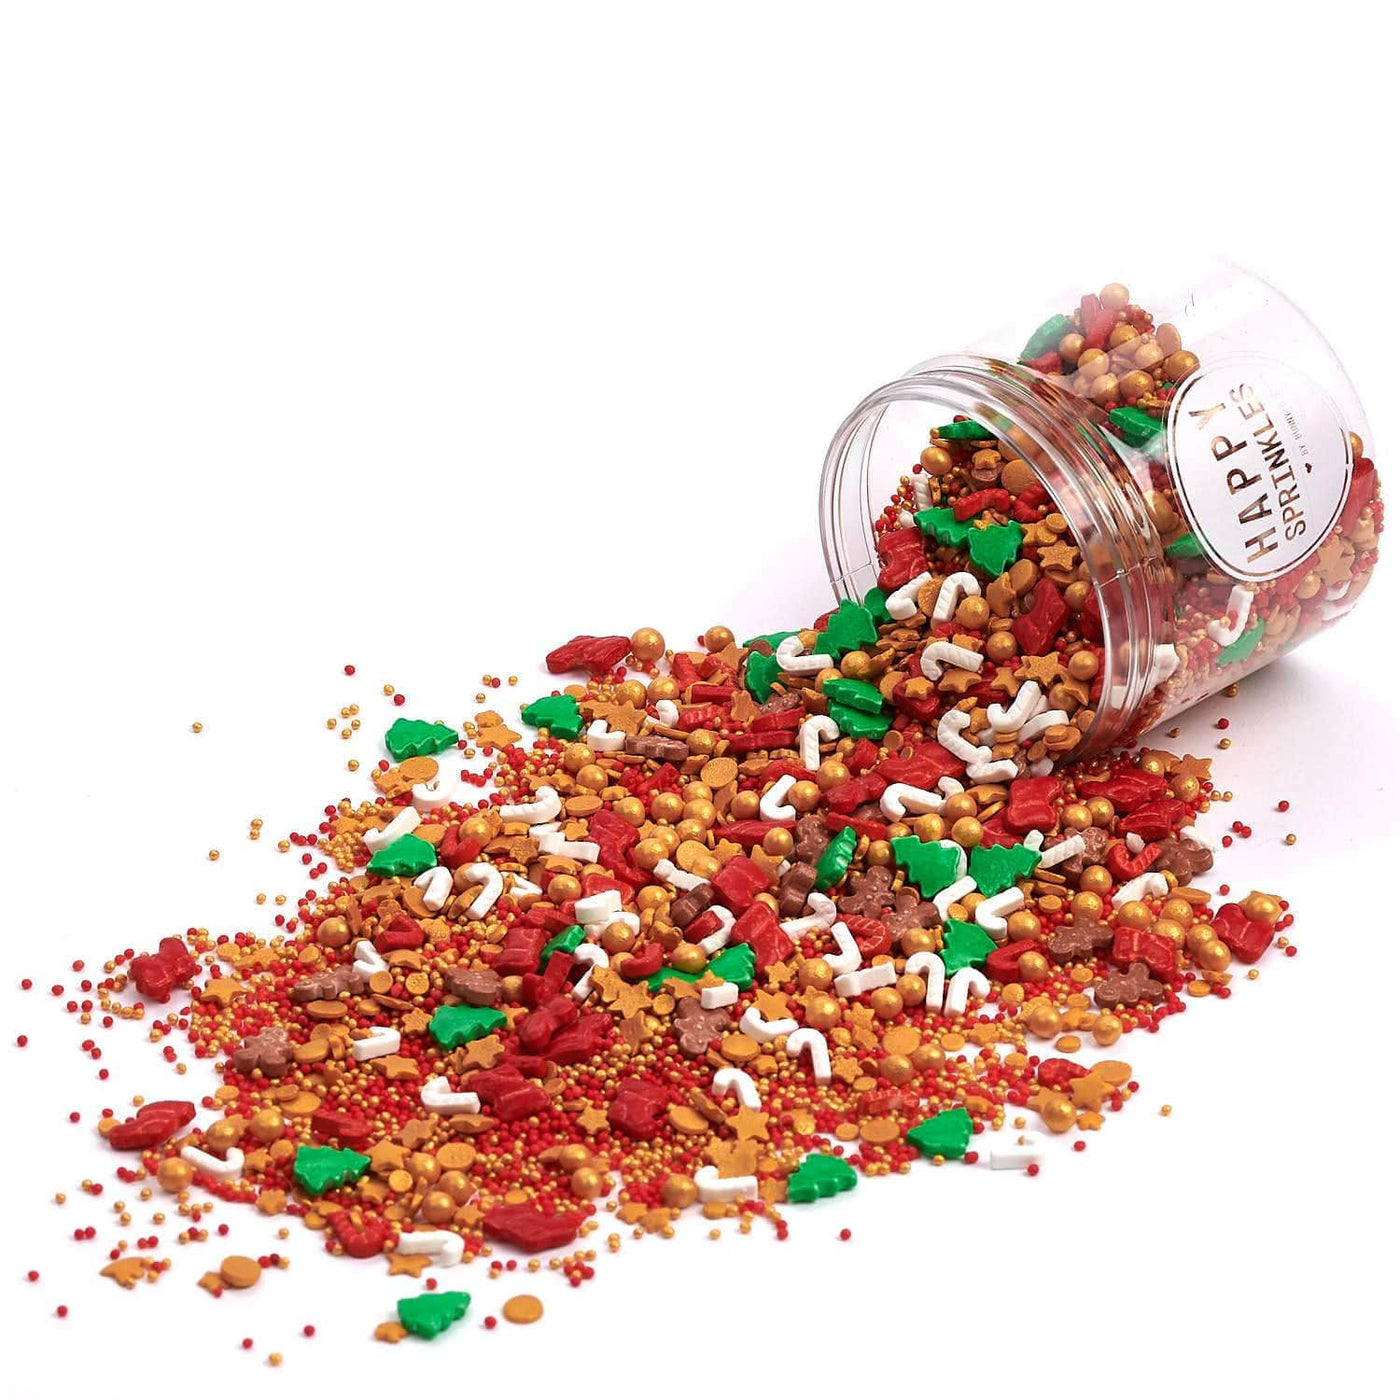 Streusel-Mix für Weihnacht kaufen - passende Motive zur Weihnachtszeit – Happy Sprinkles